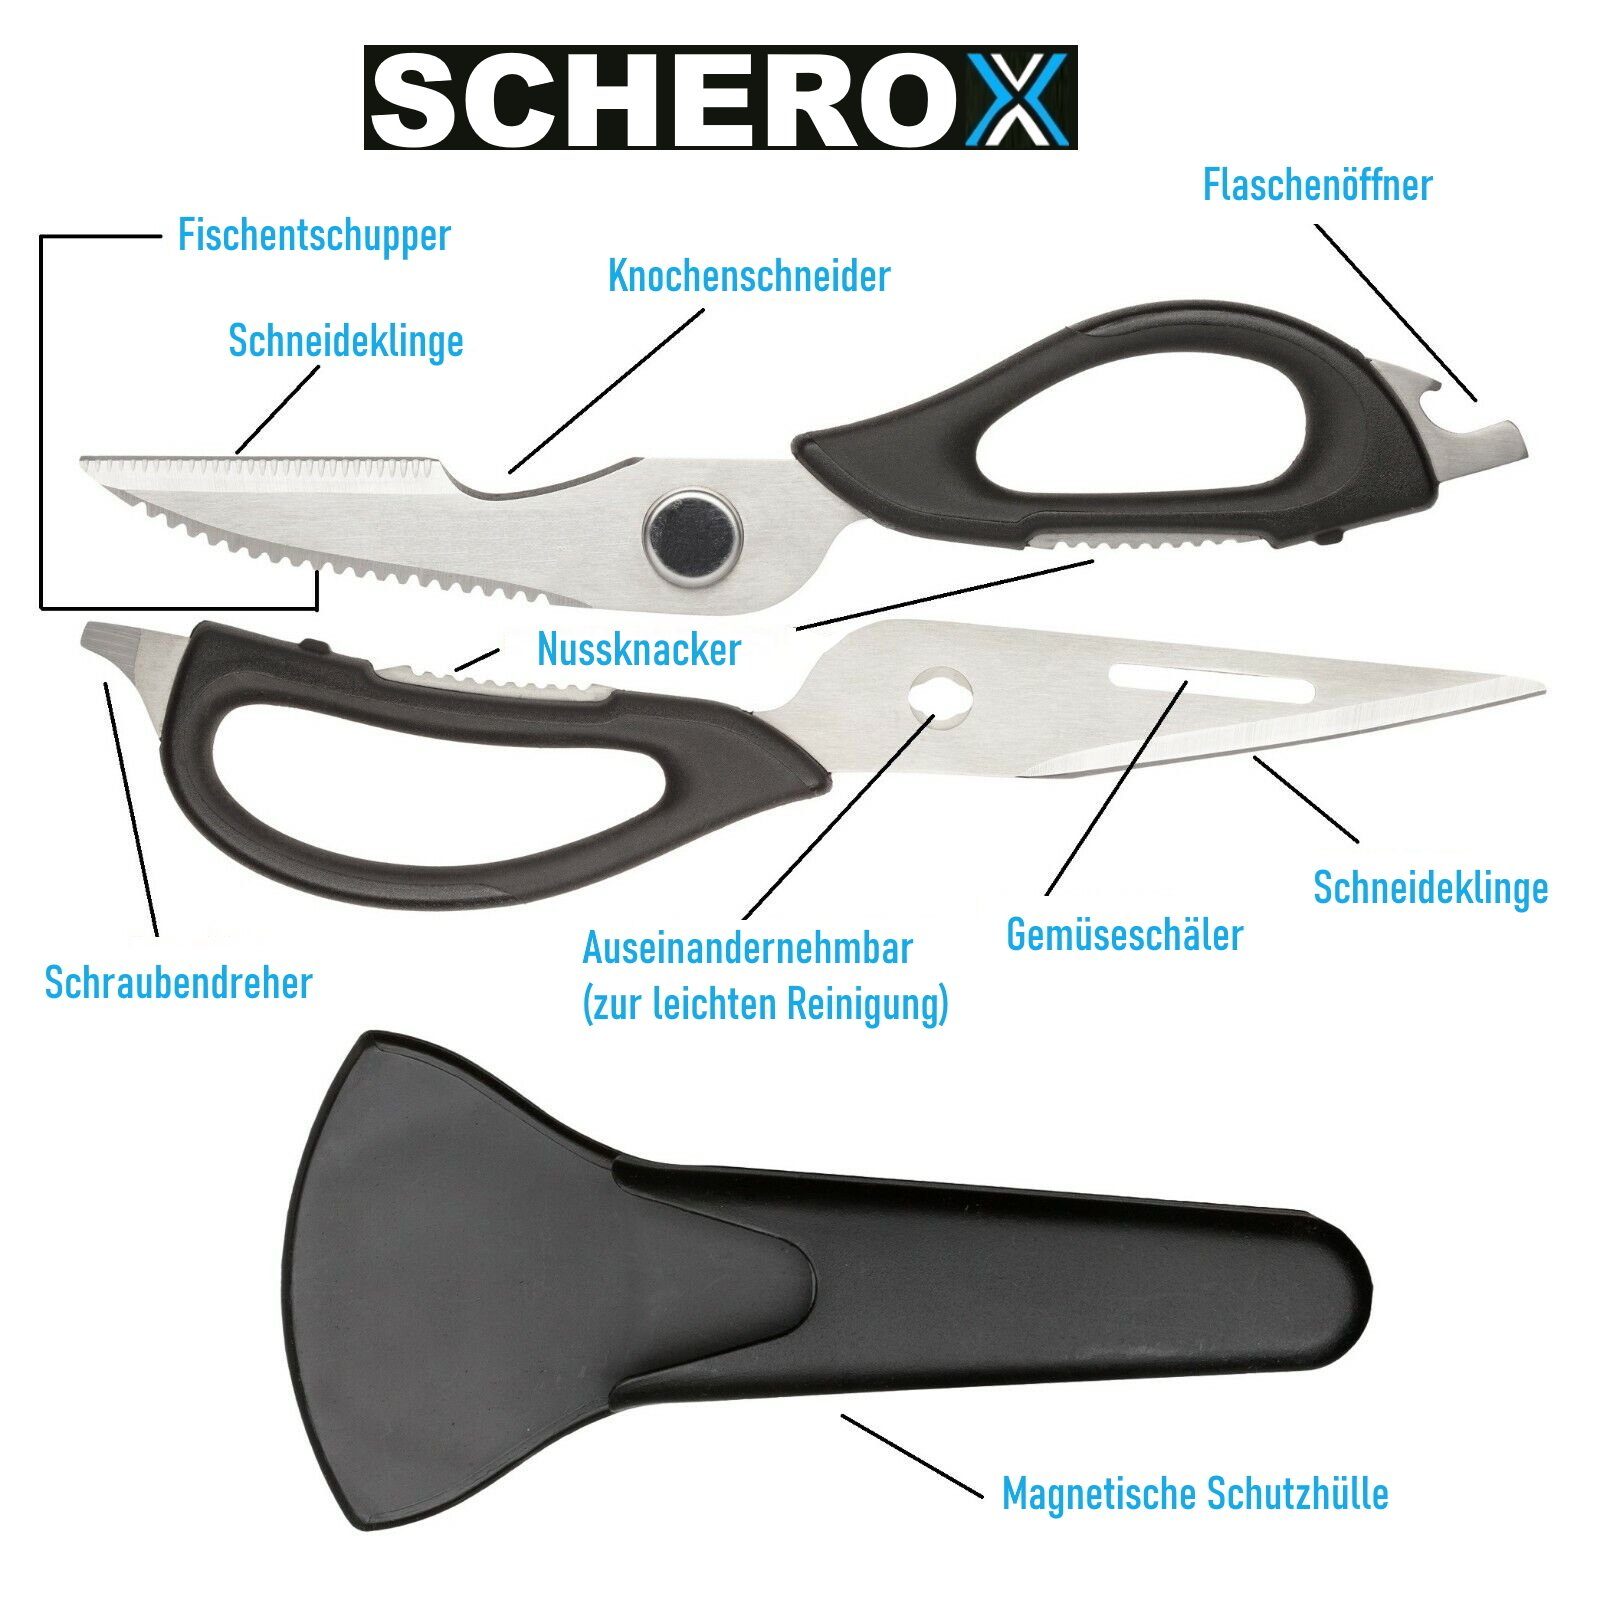 MAVURA Haushaltsschere SCHEROX Messer Küchenschere Flaschenöffner Multifunktionale Schneider Schere, Nussknacker Schraubenzieher Edelstahl